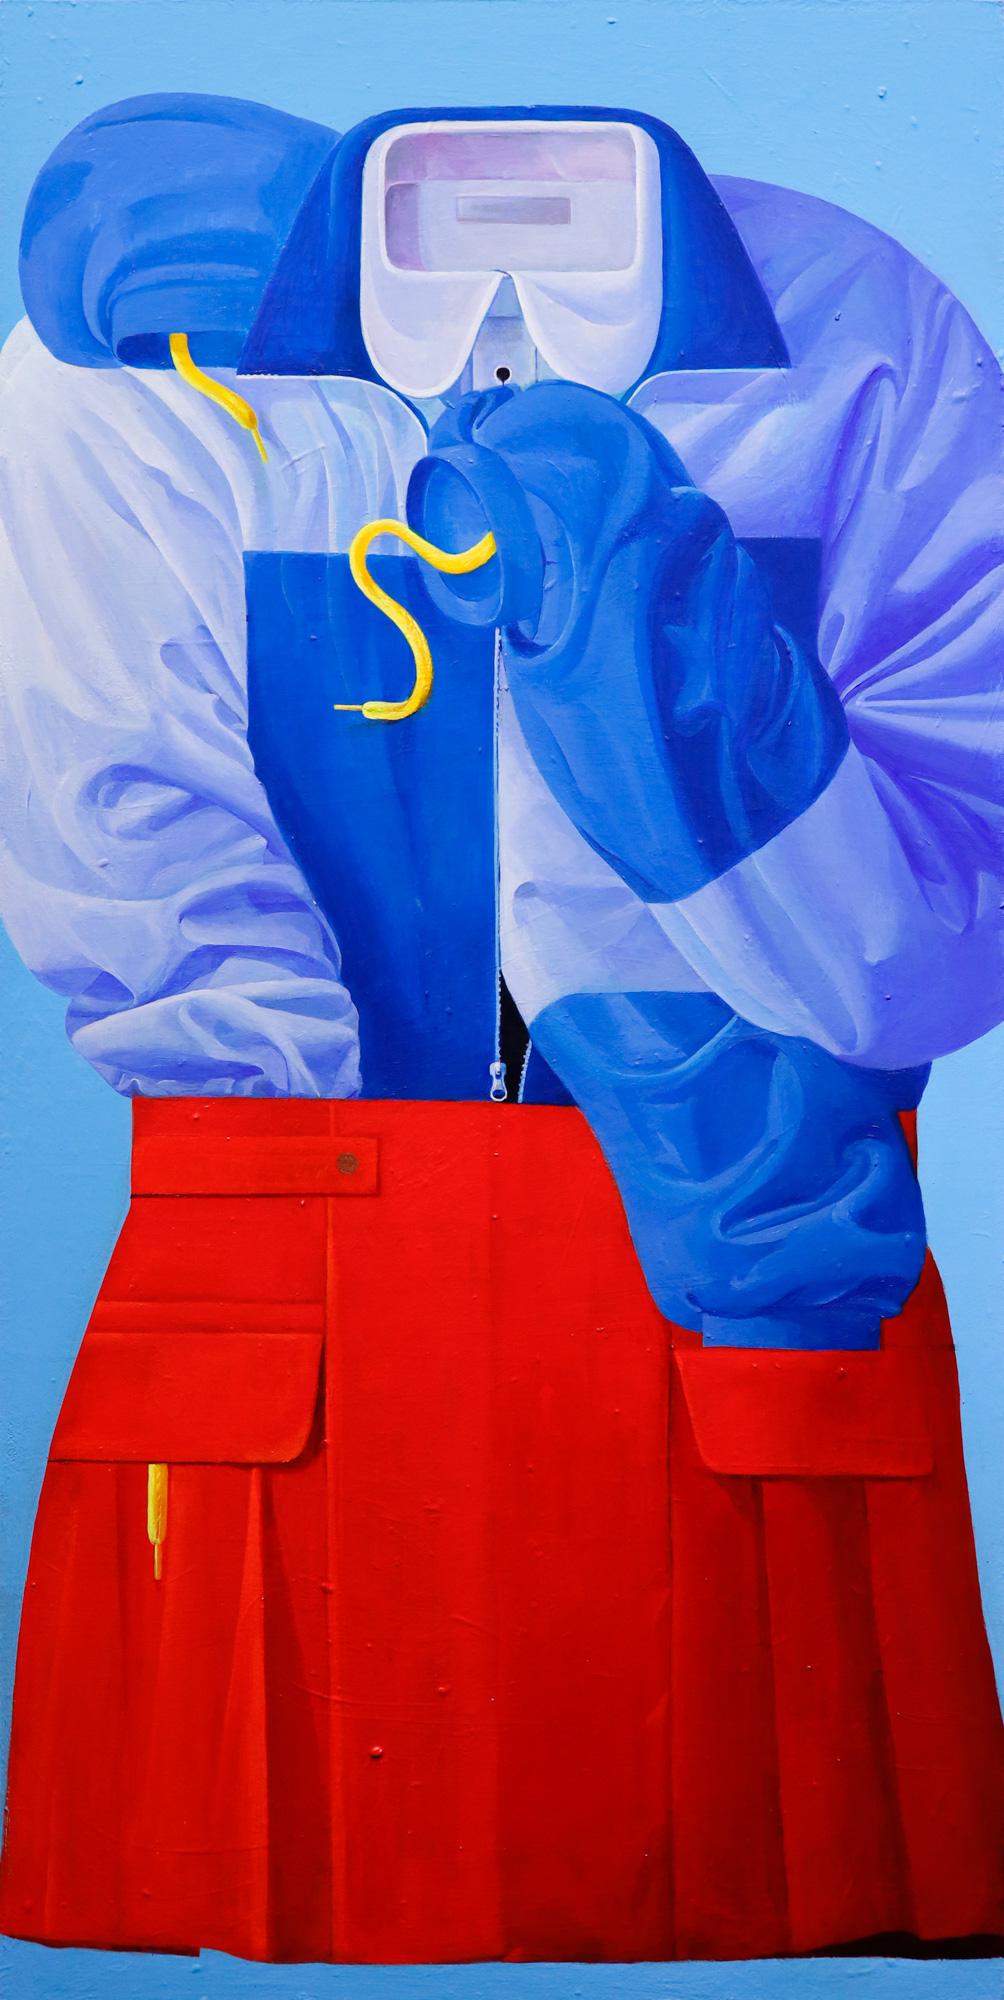 „Nothing Up My Sleeve“ Jacke und Schuhjacke mit Motiv, Kleidung, Acrylgemälde – Painting von Ziui Chen